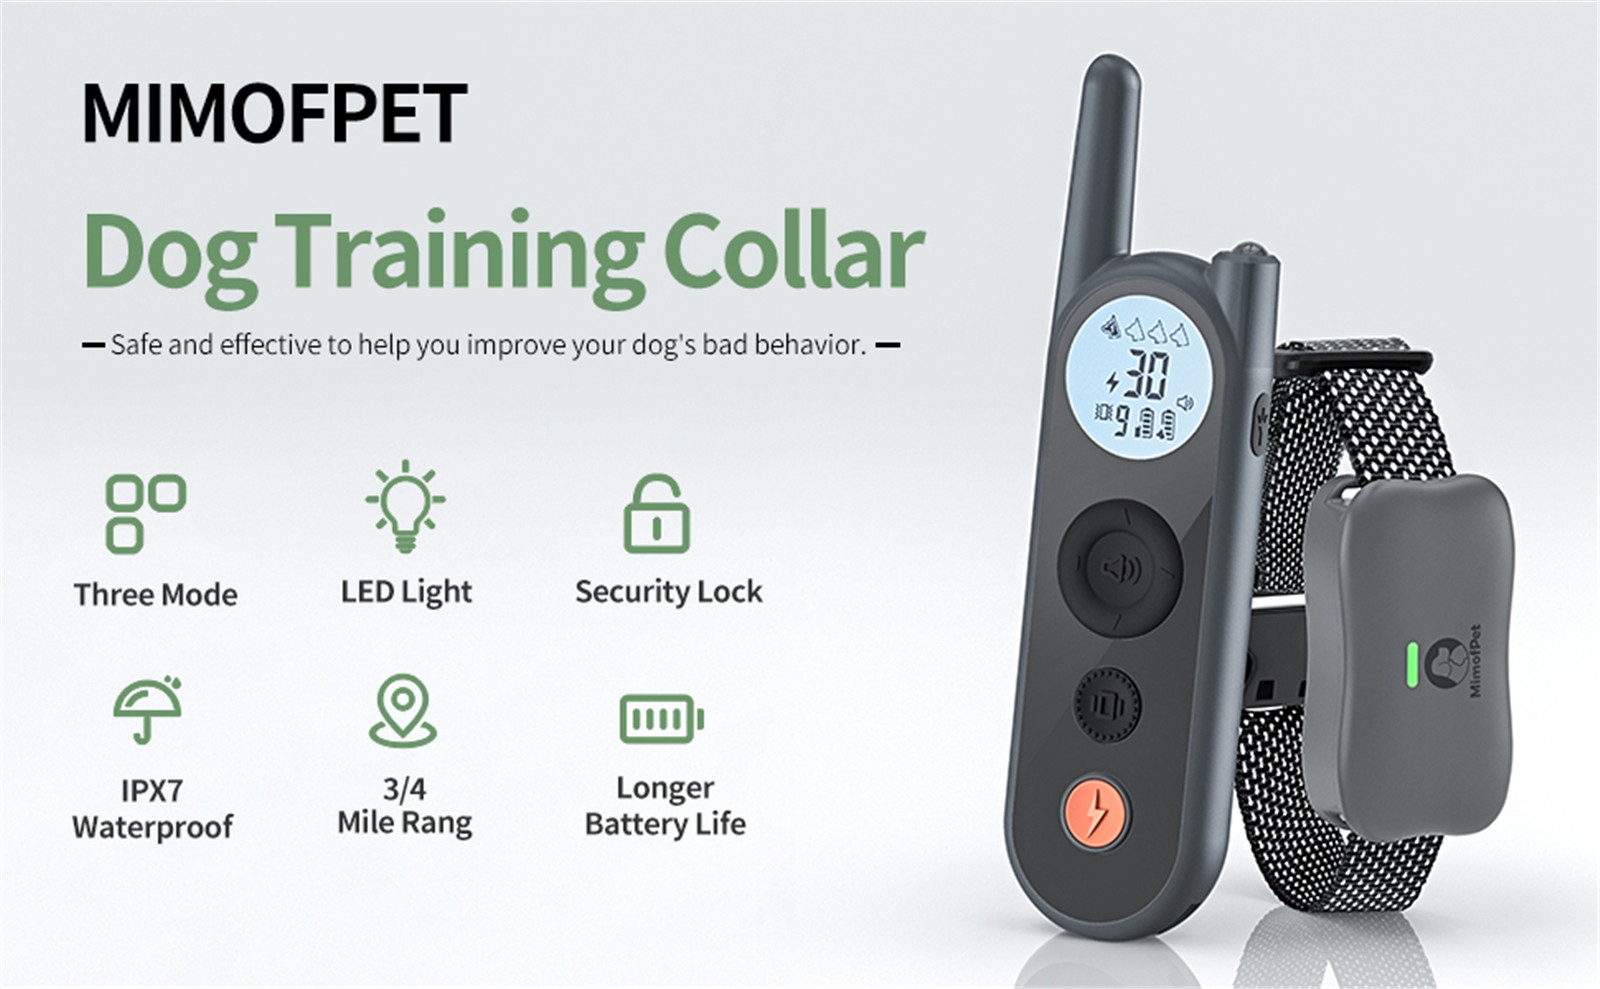 Introduzione nantu à Mimofpet X1 Model Dog Training Collar 01 (2)